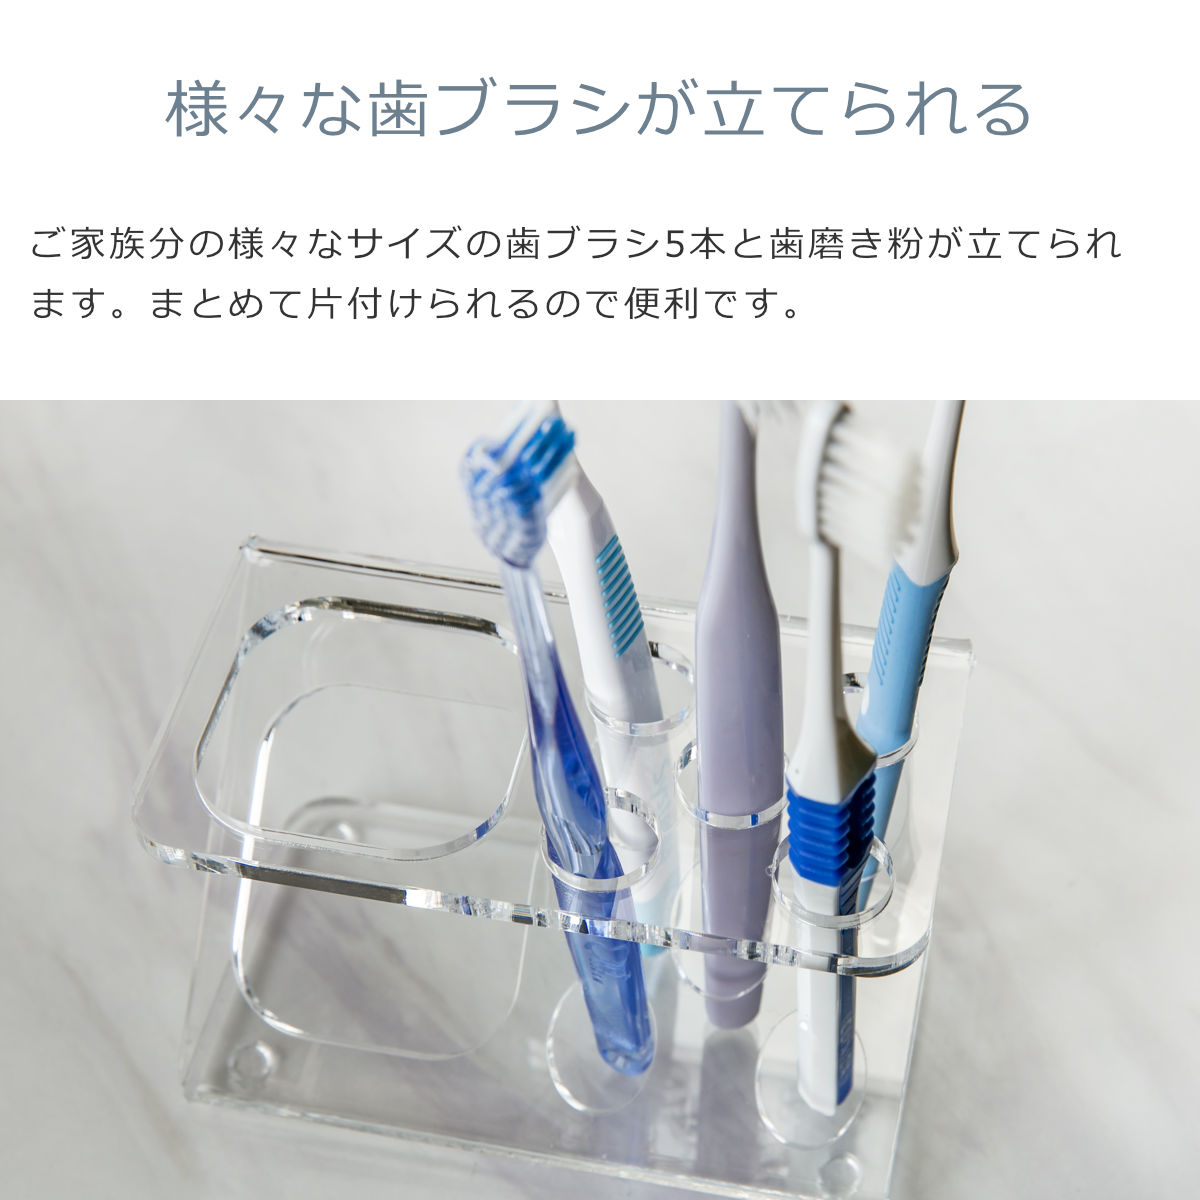 【日本製】 歯ブラシスタンド Z型 amenist 透明 004-604 アクリル製 歯ブラシ立て 5本 クリア